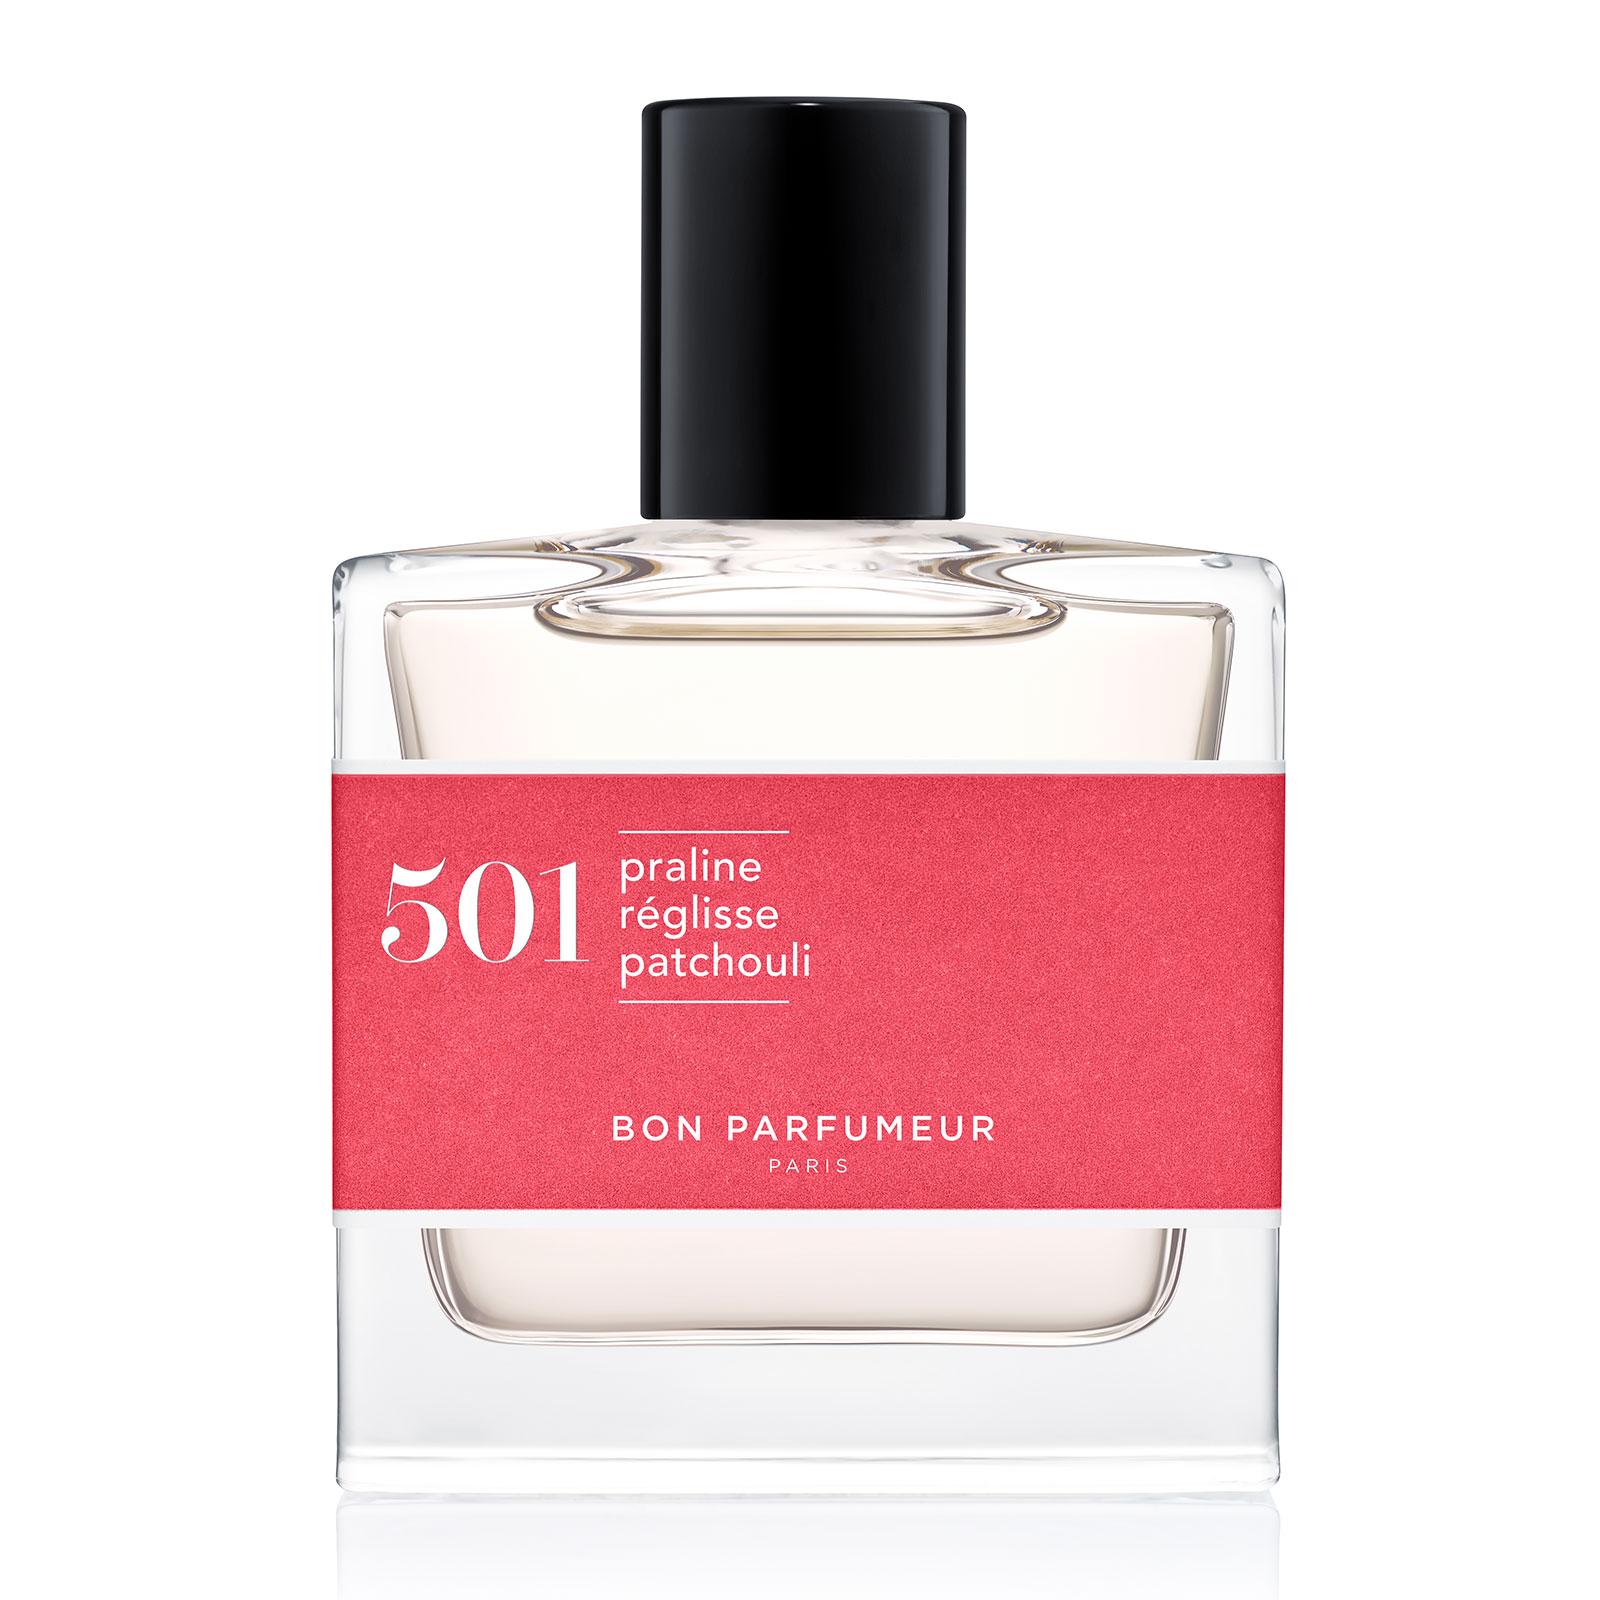 Bon Parfumeur 501 Praline Licorice Patchouli Eau de Parfum 30ml ...